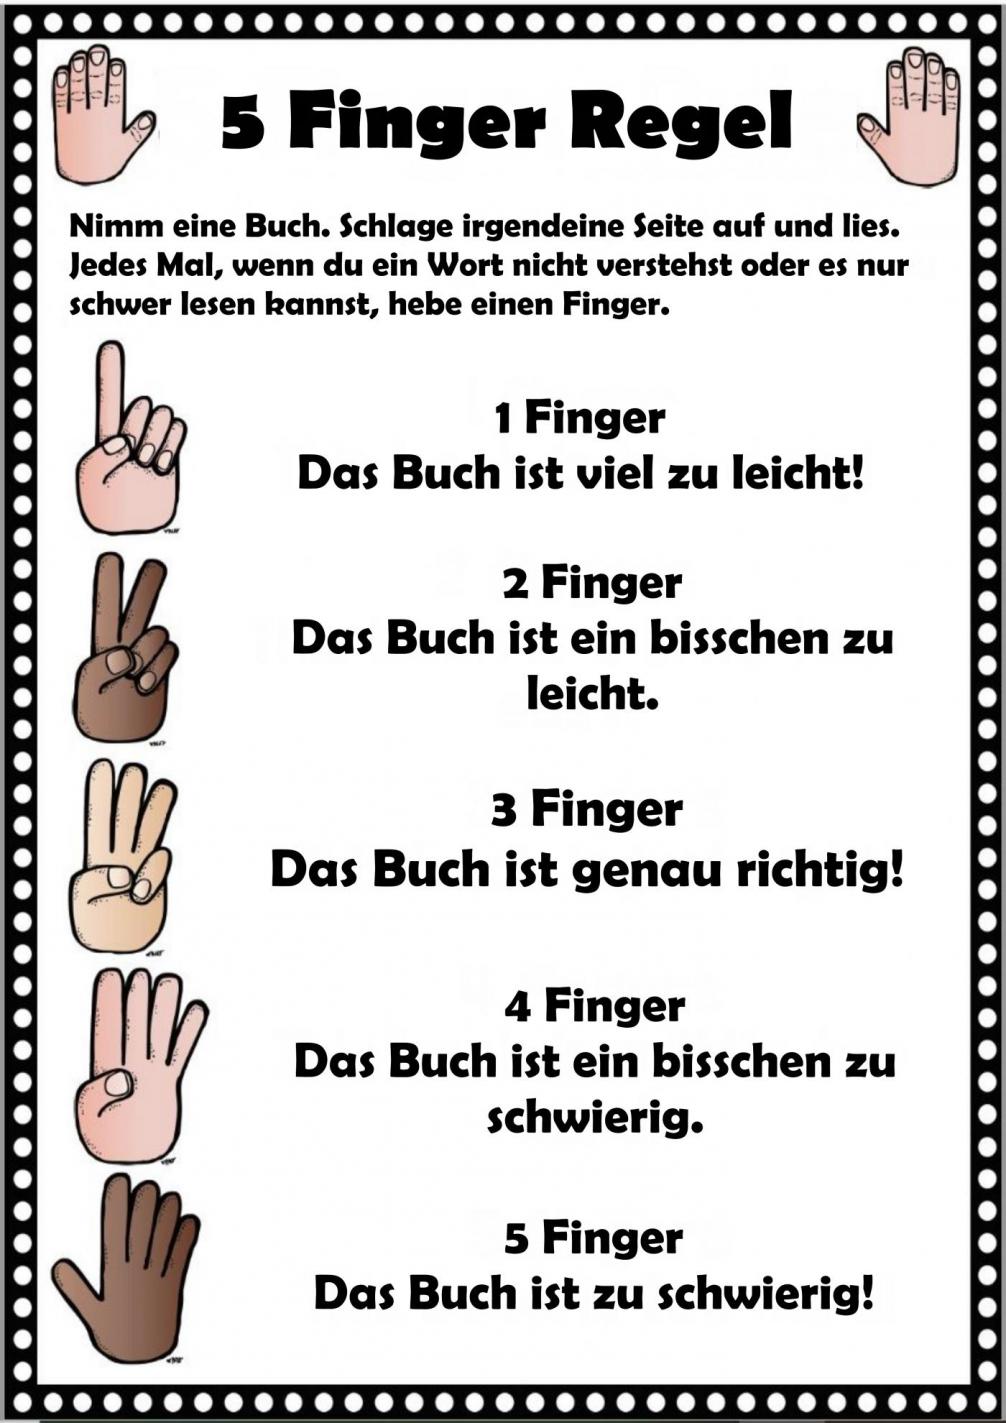 5 Finger Regel